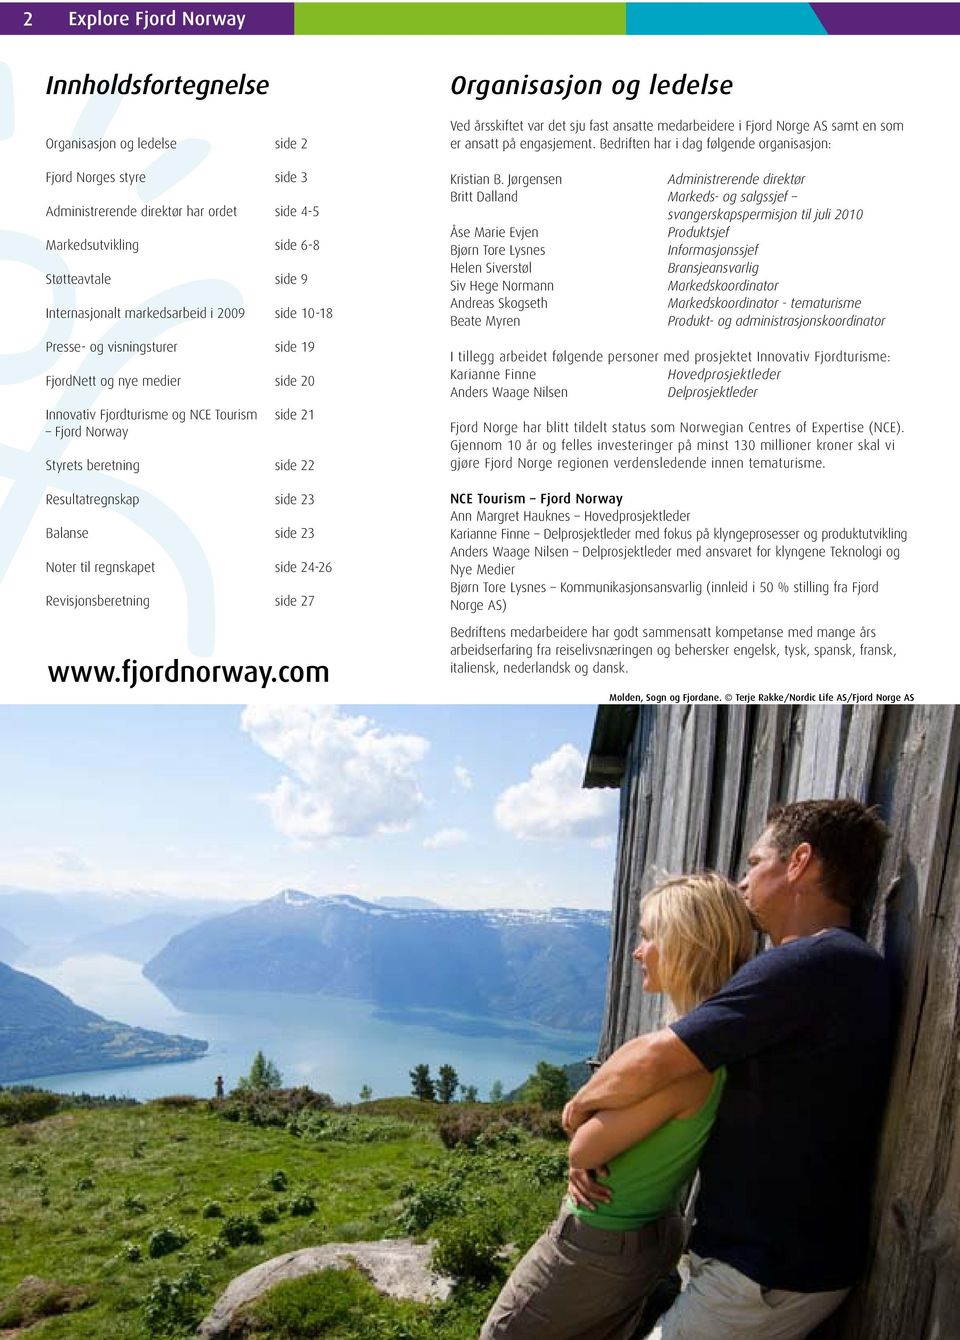 Resultatregnskap side 23 Balanse side 23 Noter til regnskapet side 24-26 Revisjonsberetning side 27 www.fjordnorway.